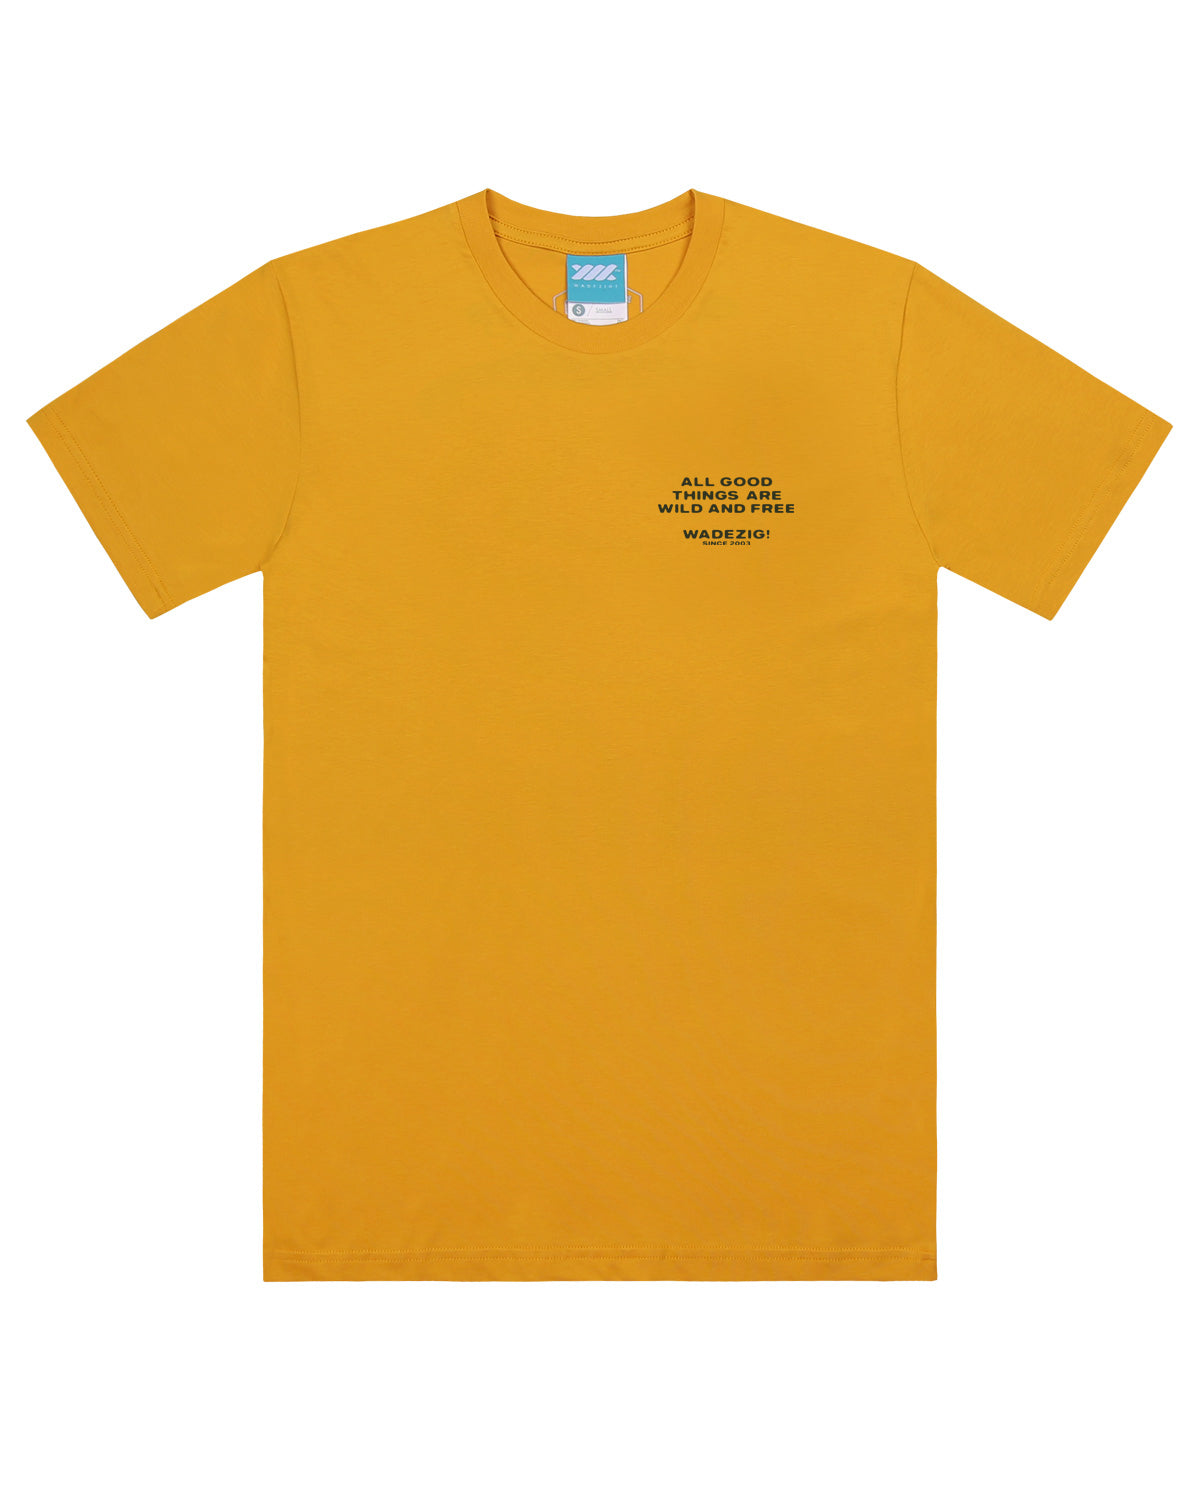 Wadezig! T-Shirt - Free Yellow